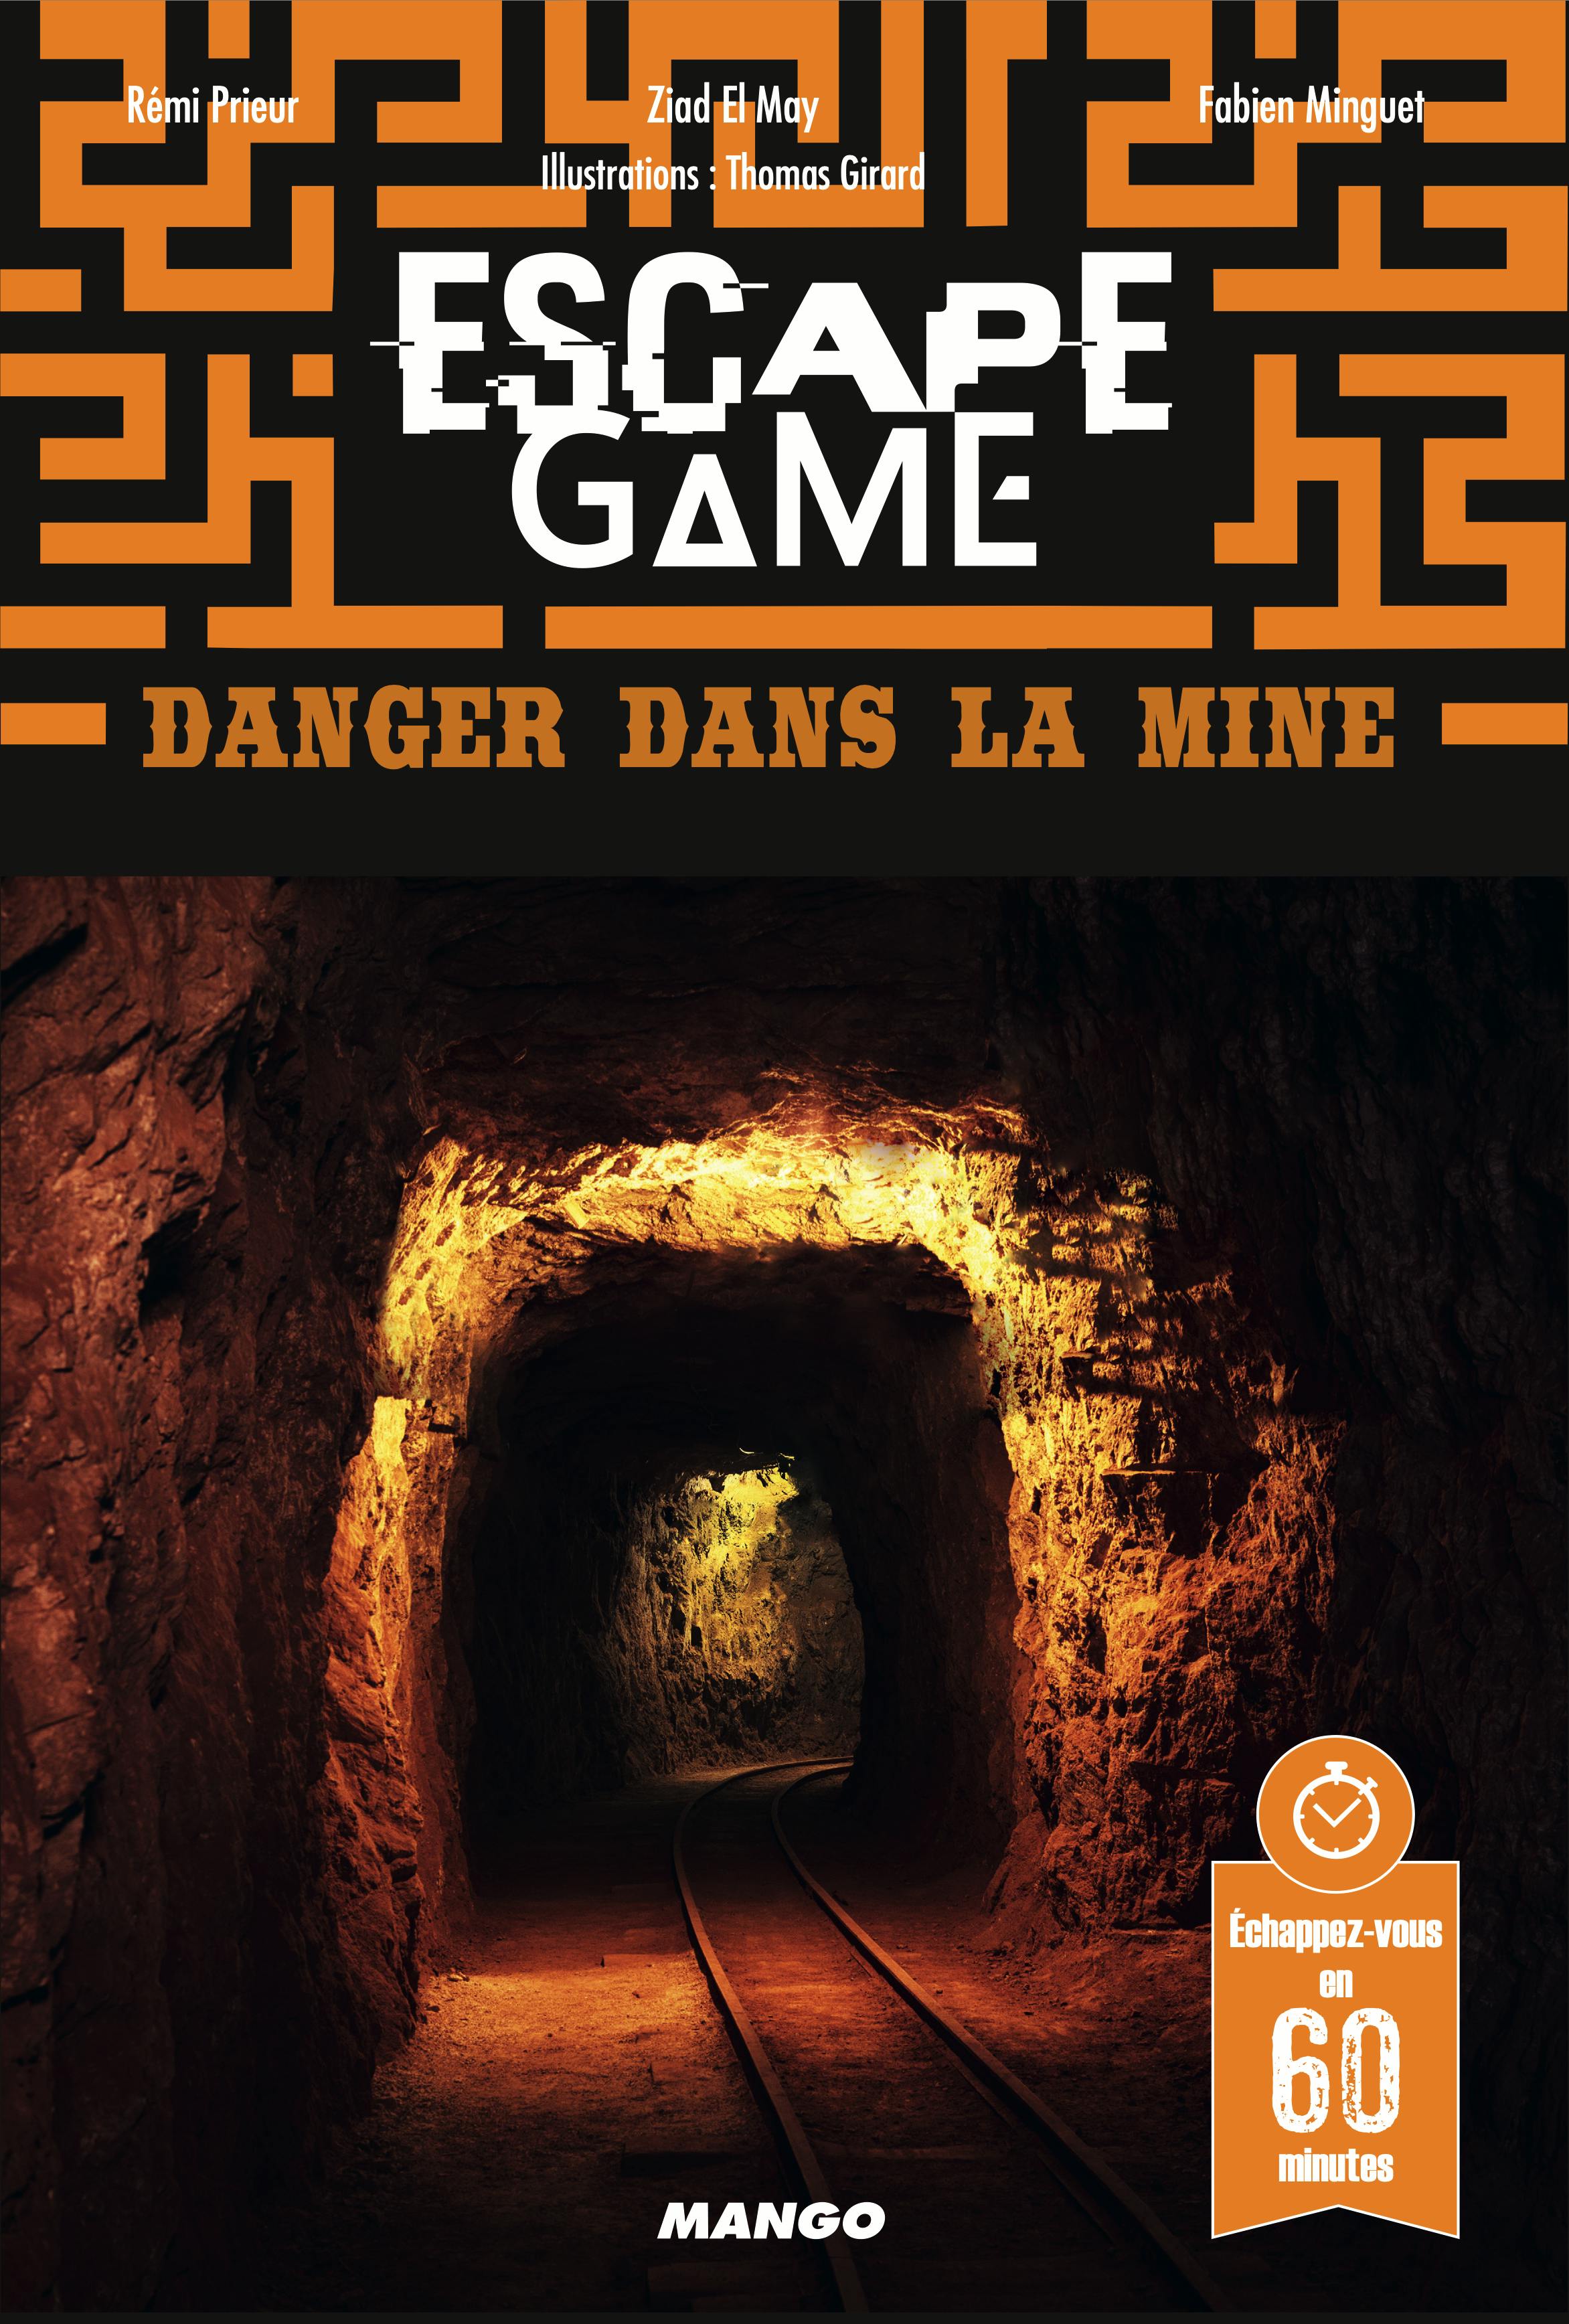 Escape Game : Danger dans la mine